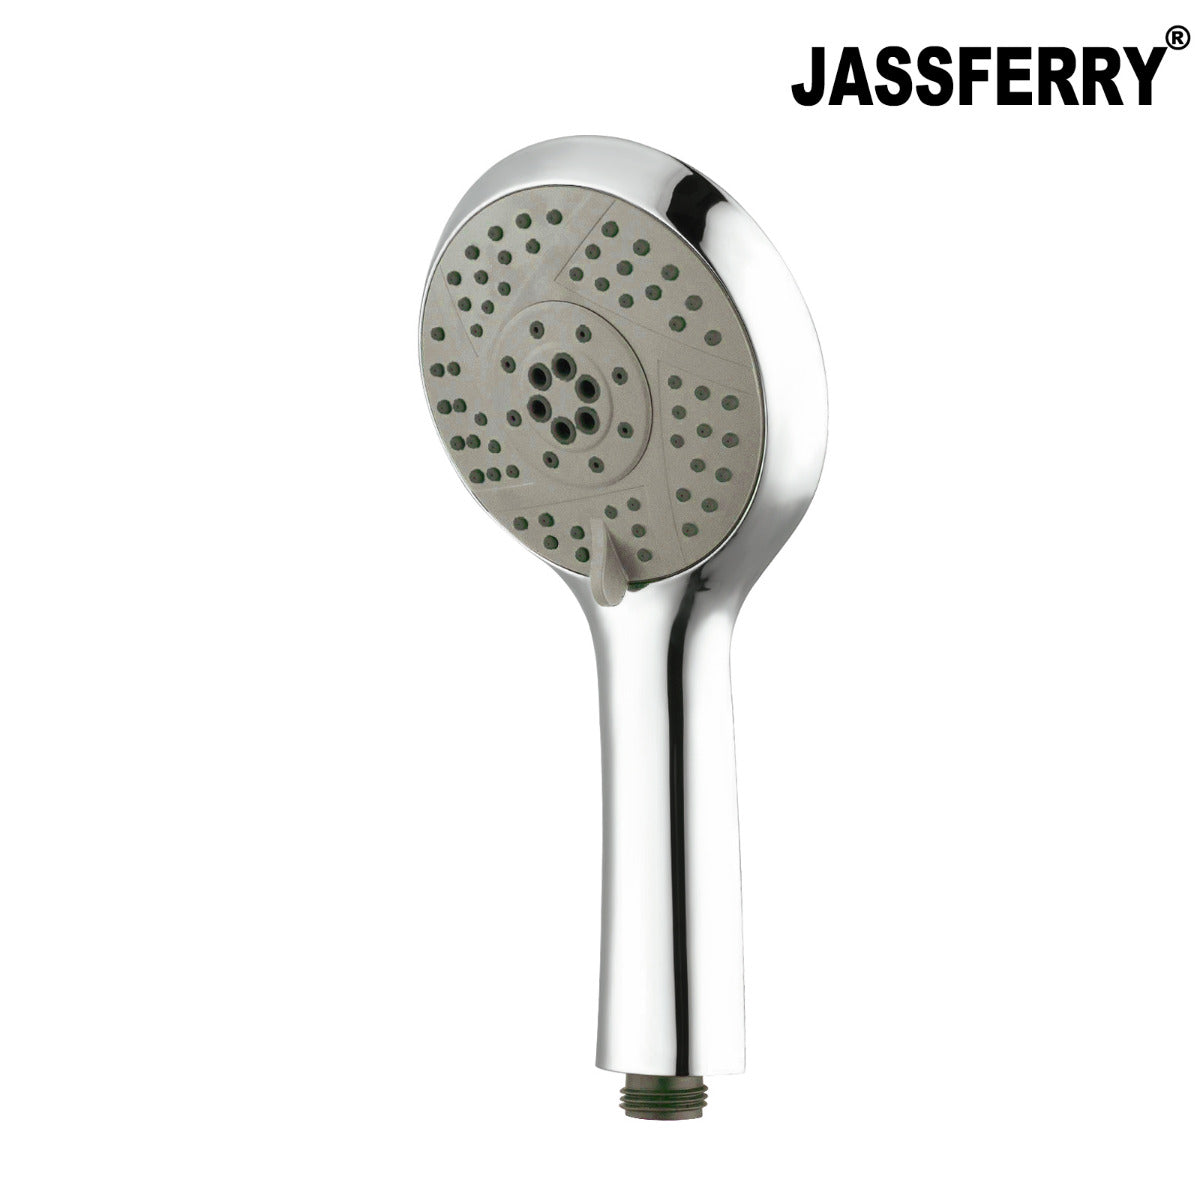 JassferryJASSFERRY New Chrome Shower Head Sets 5 Mode Massage Spray 4inch (10cm) ABSShower Heads